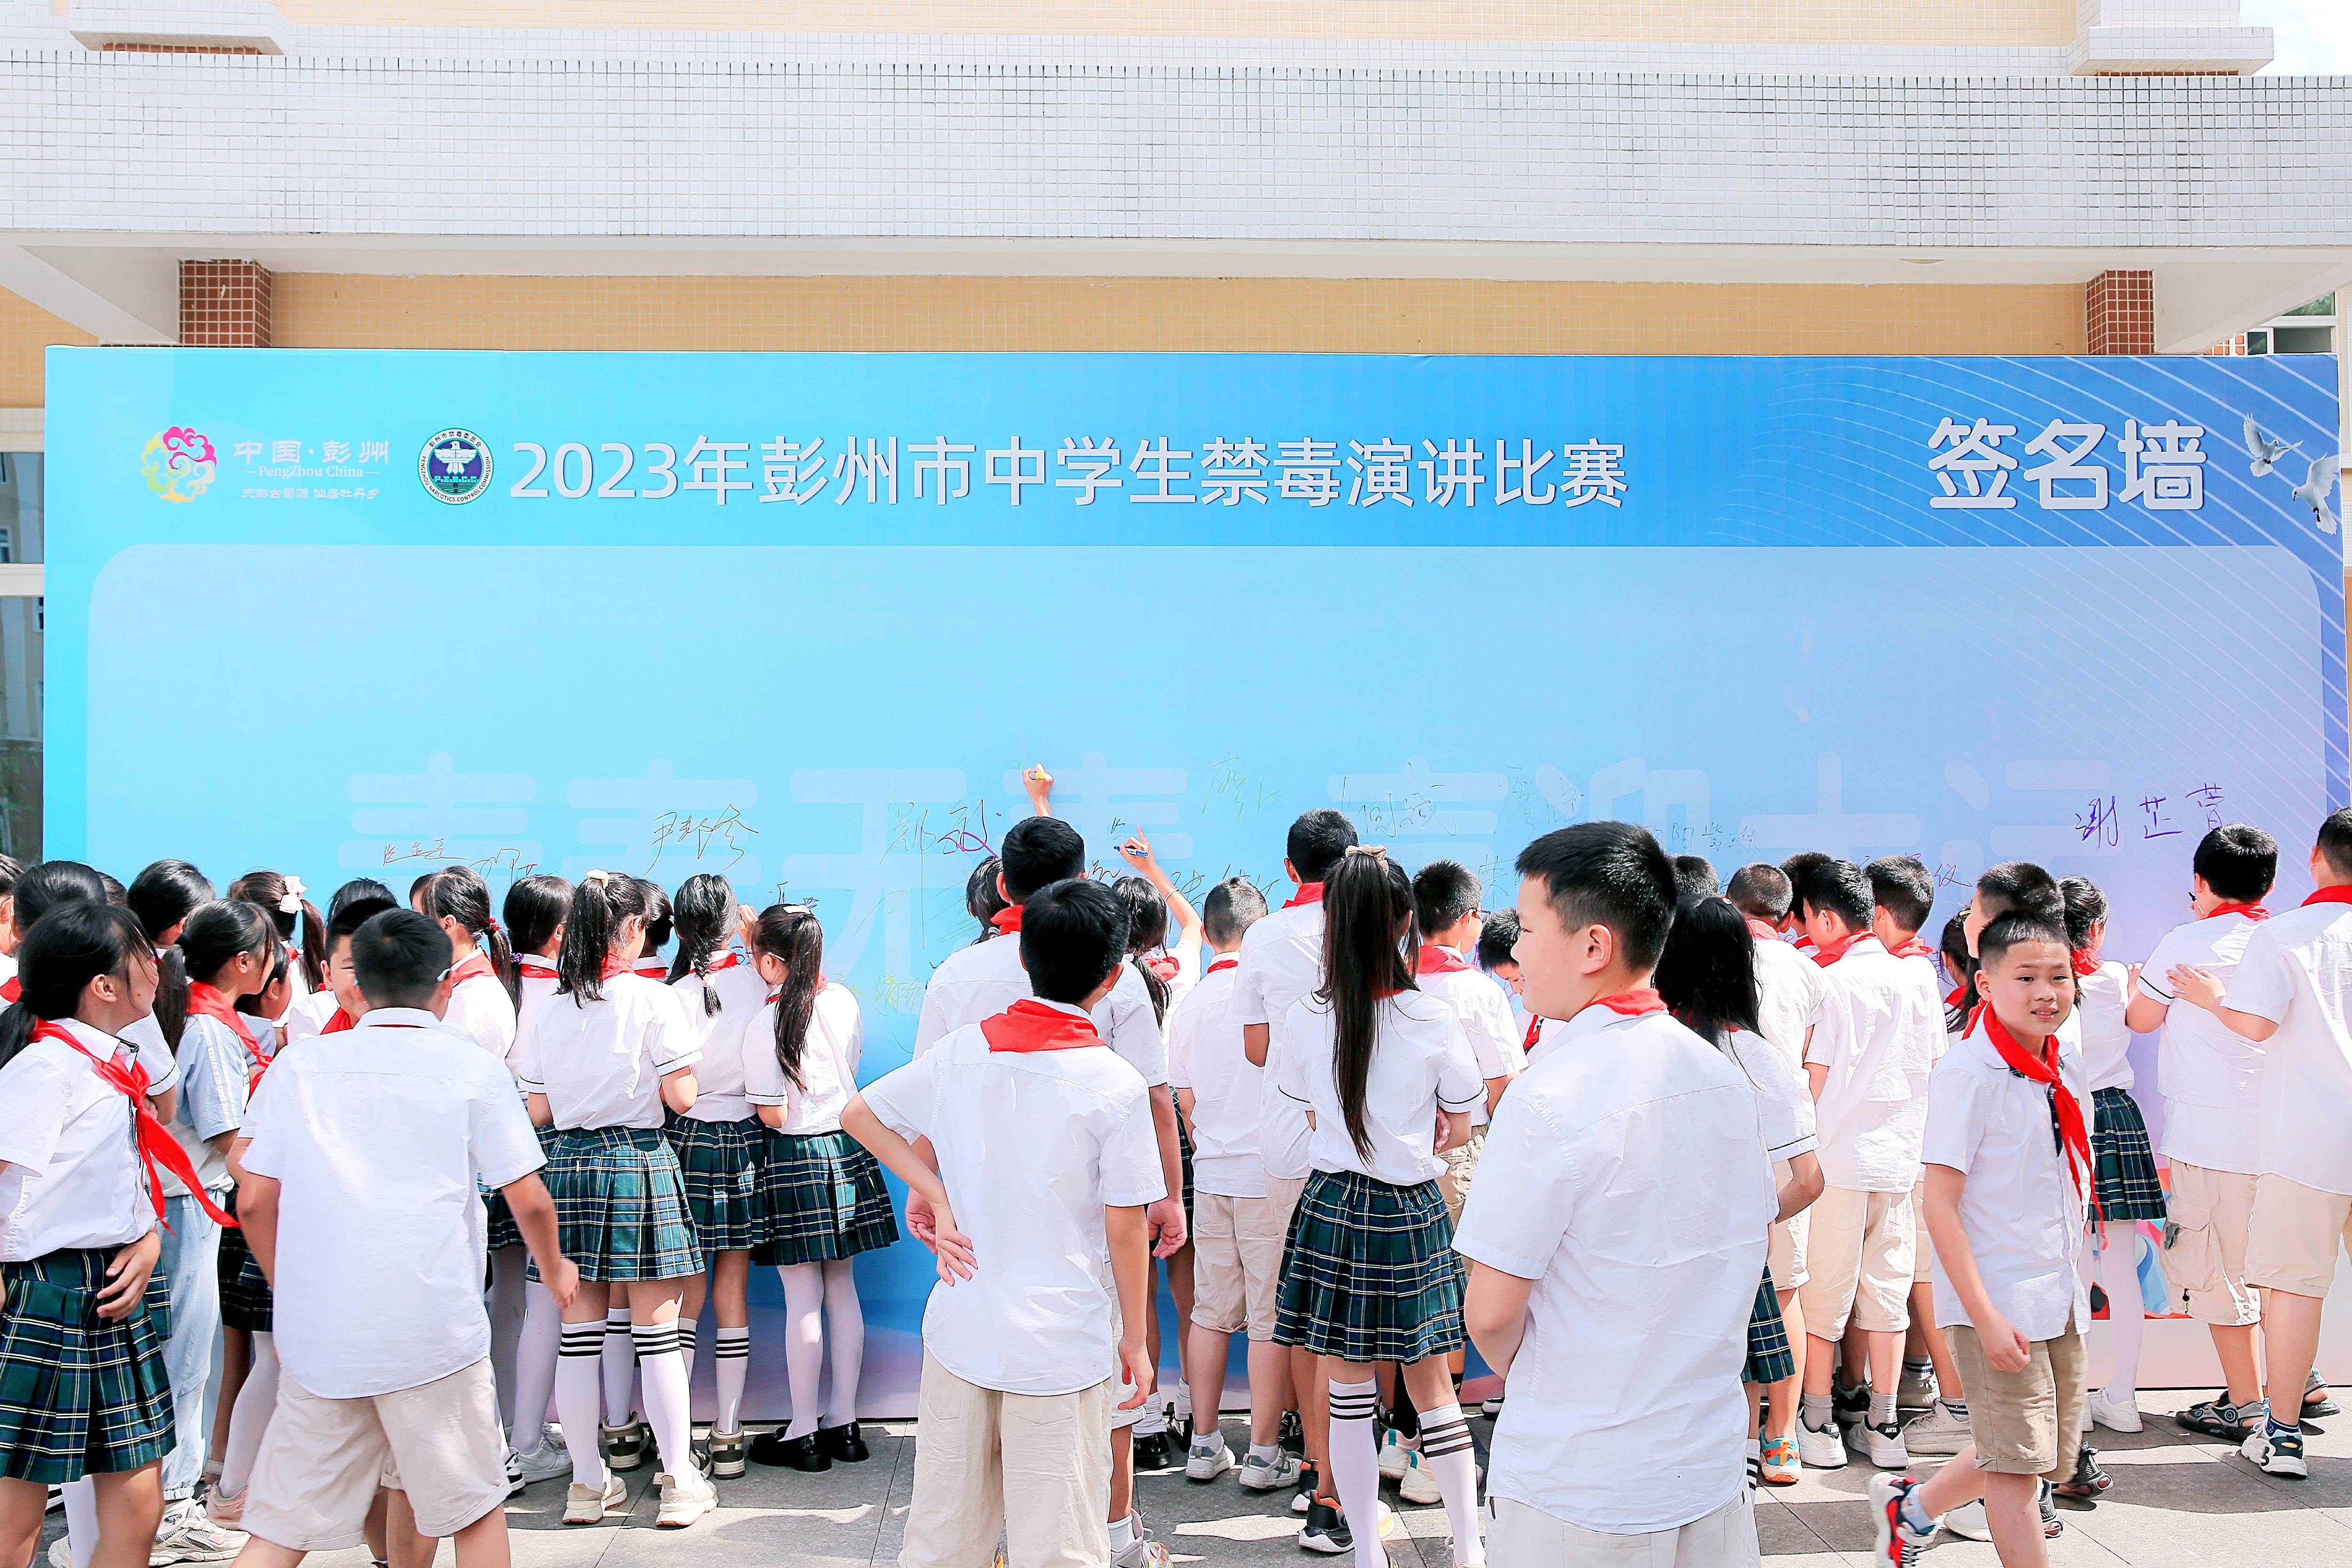 成都彭州高中图片